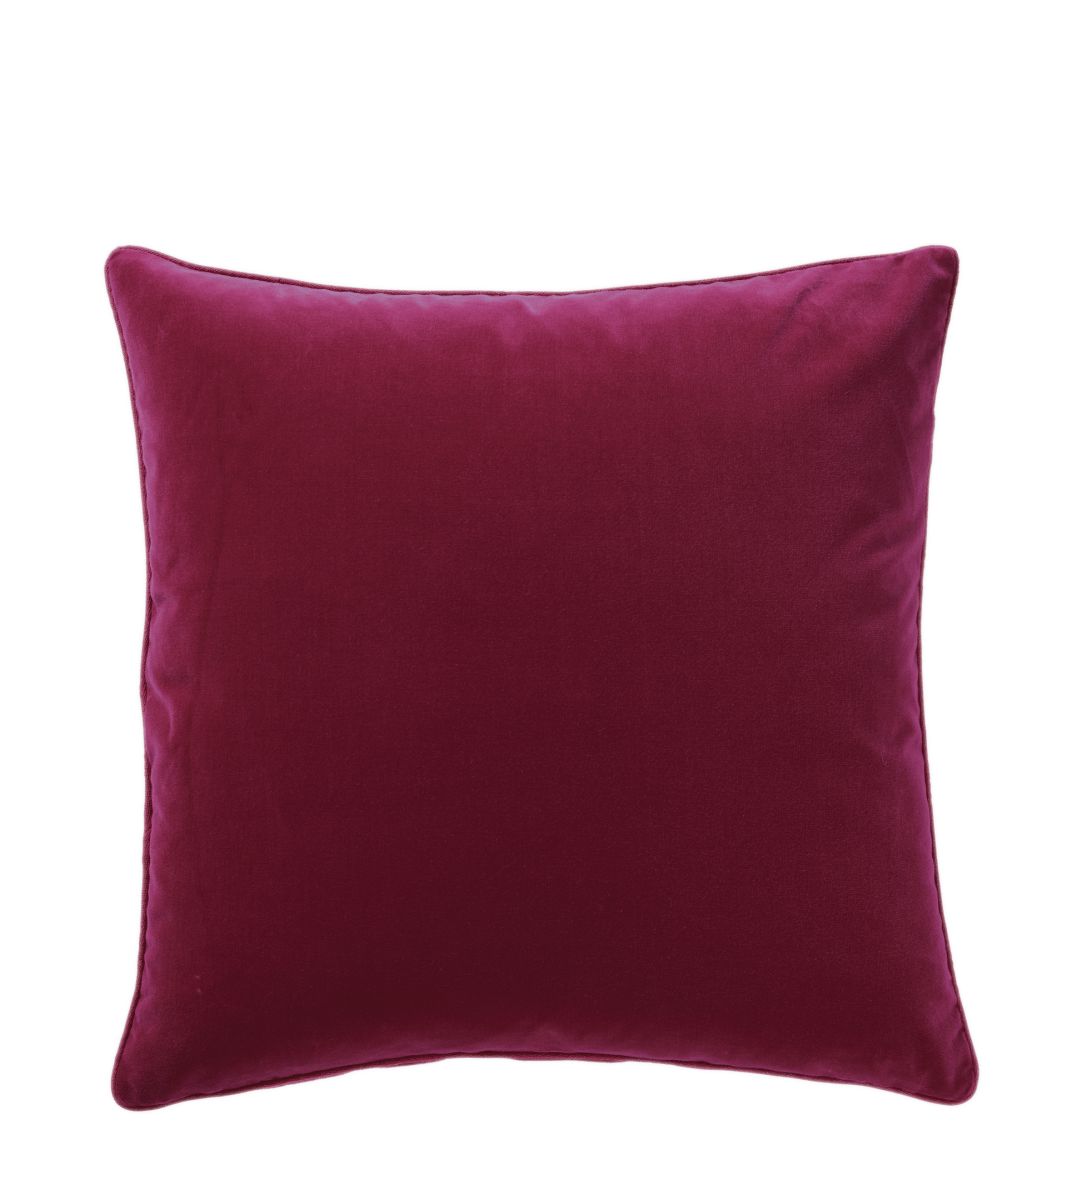 Large Plain Velvet Pillow Cover - Raspberry | OKA US